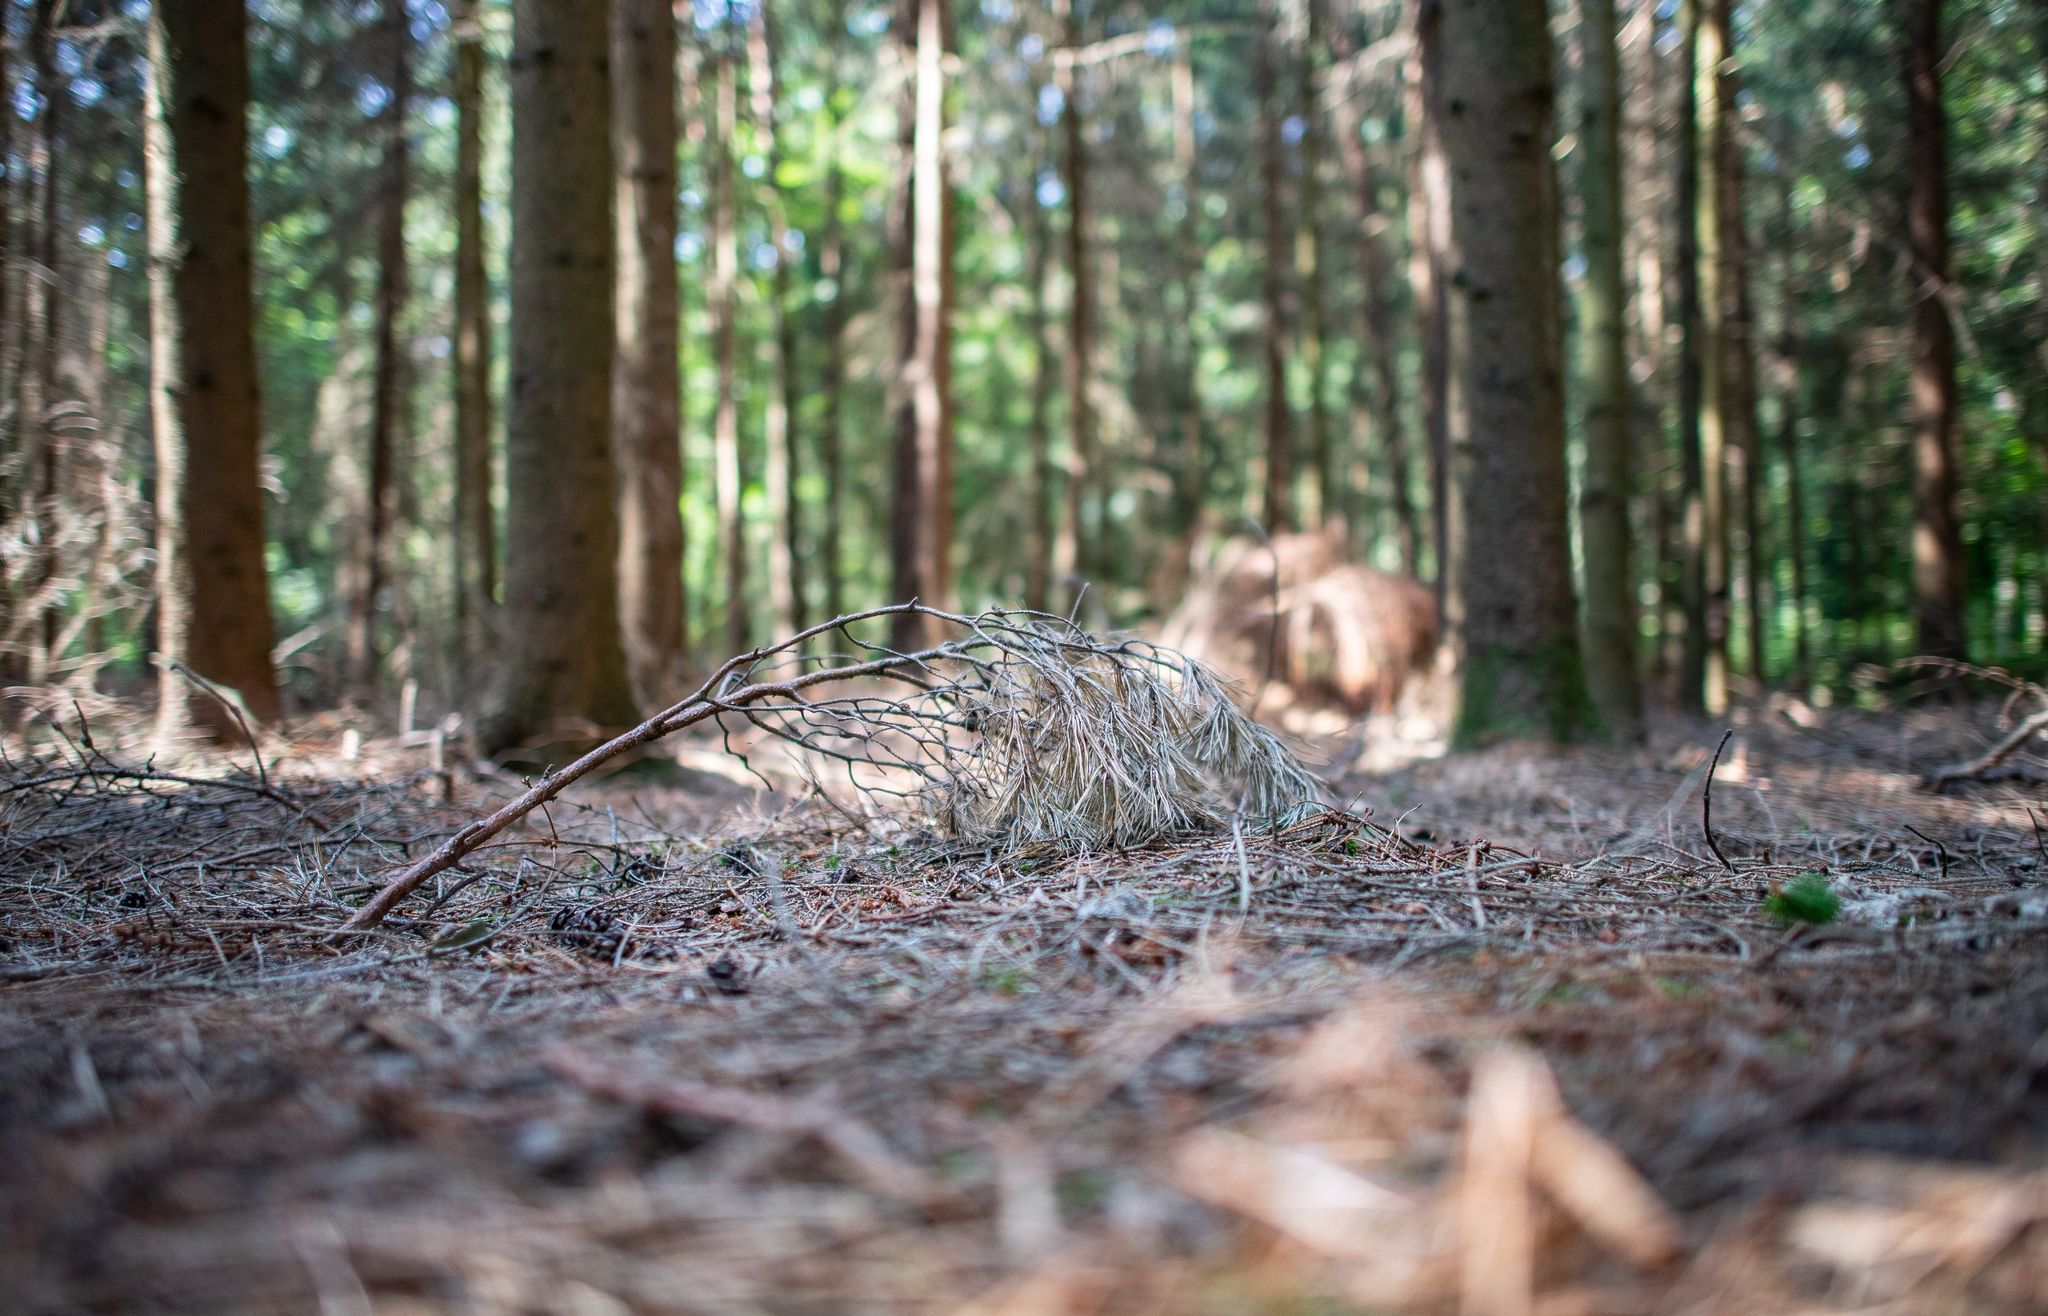 Ein trockener Fichtenast liegt auf dem trockenen Waldboden.